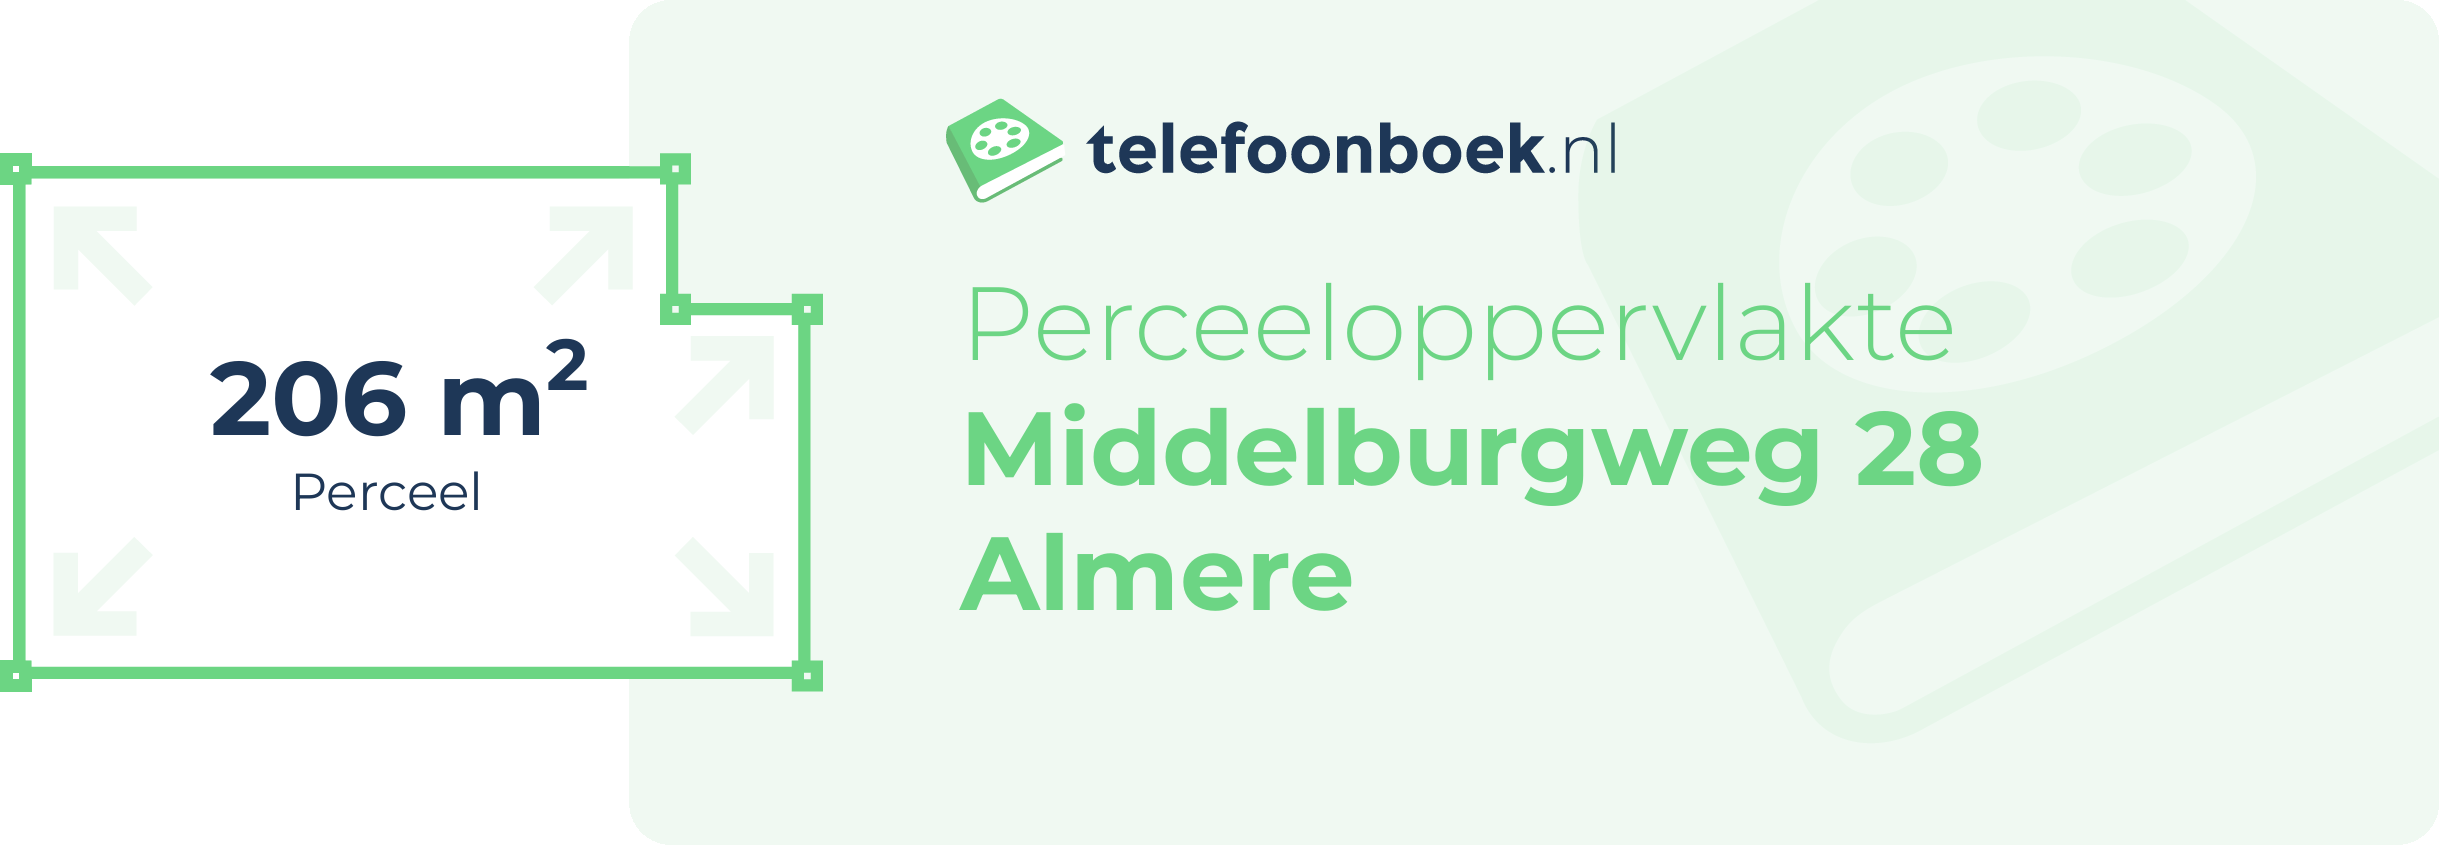 Perceeloppervlakte Middelburgweg 28 Almere